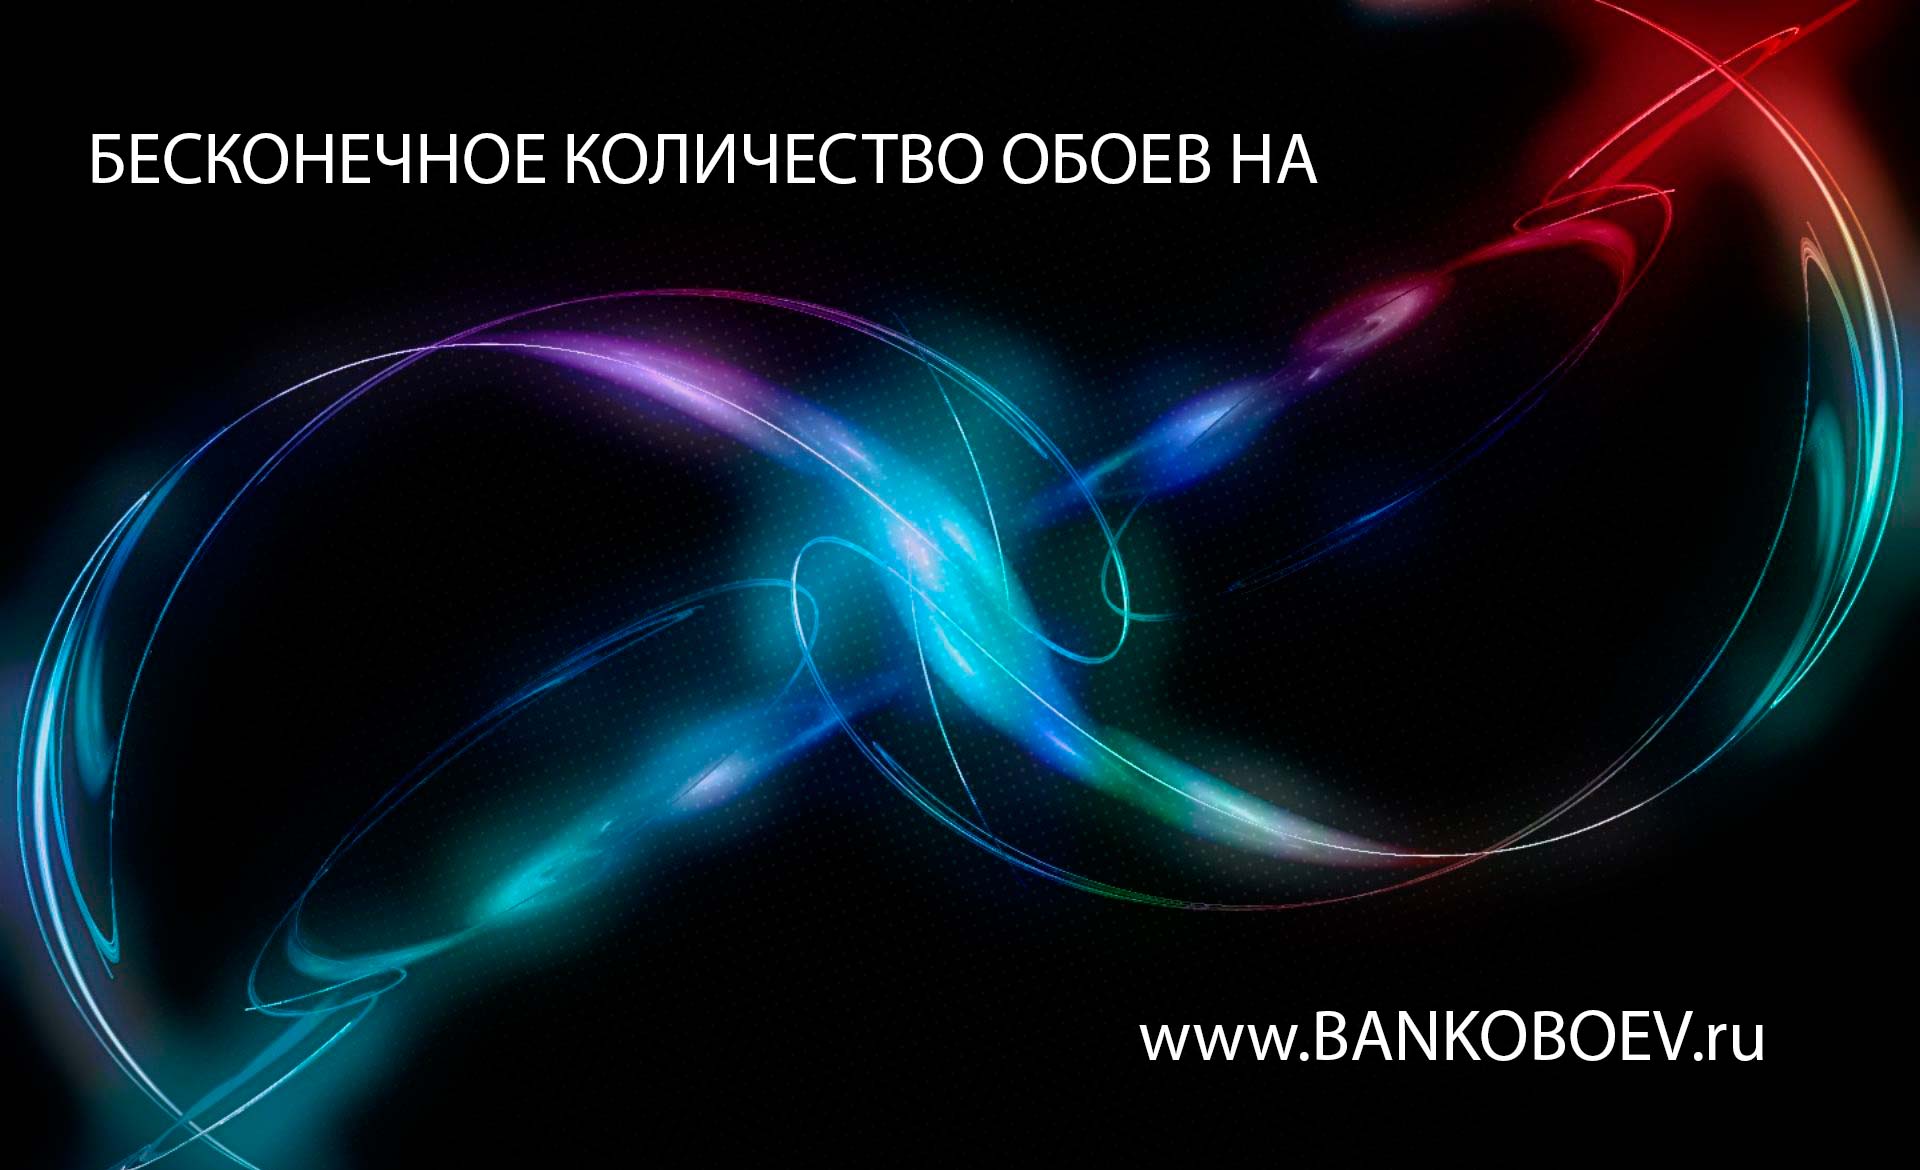 Source Bankoboev Ru Image Mtq2otc1